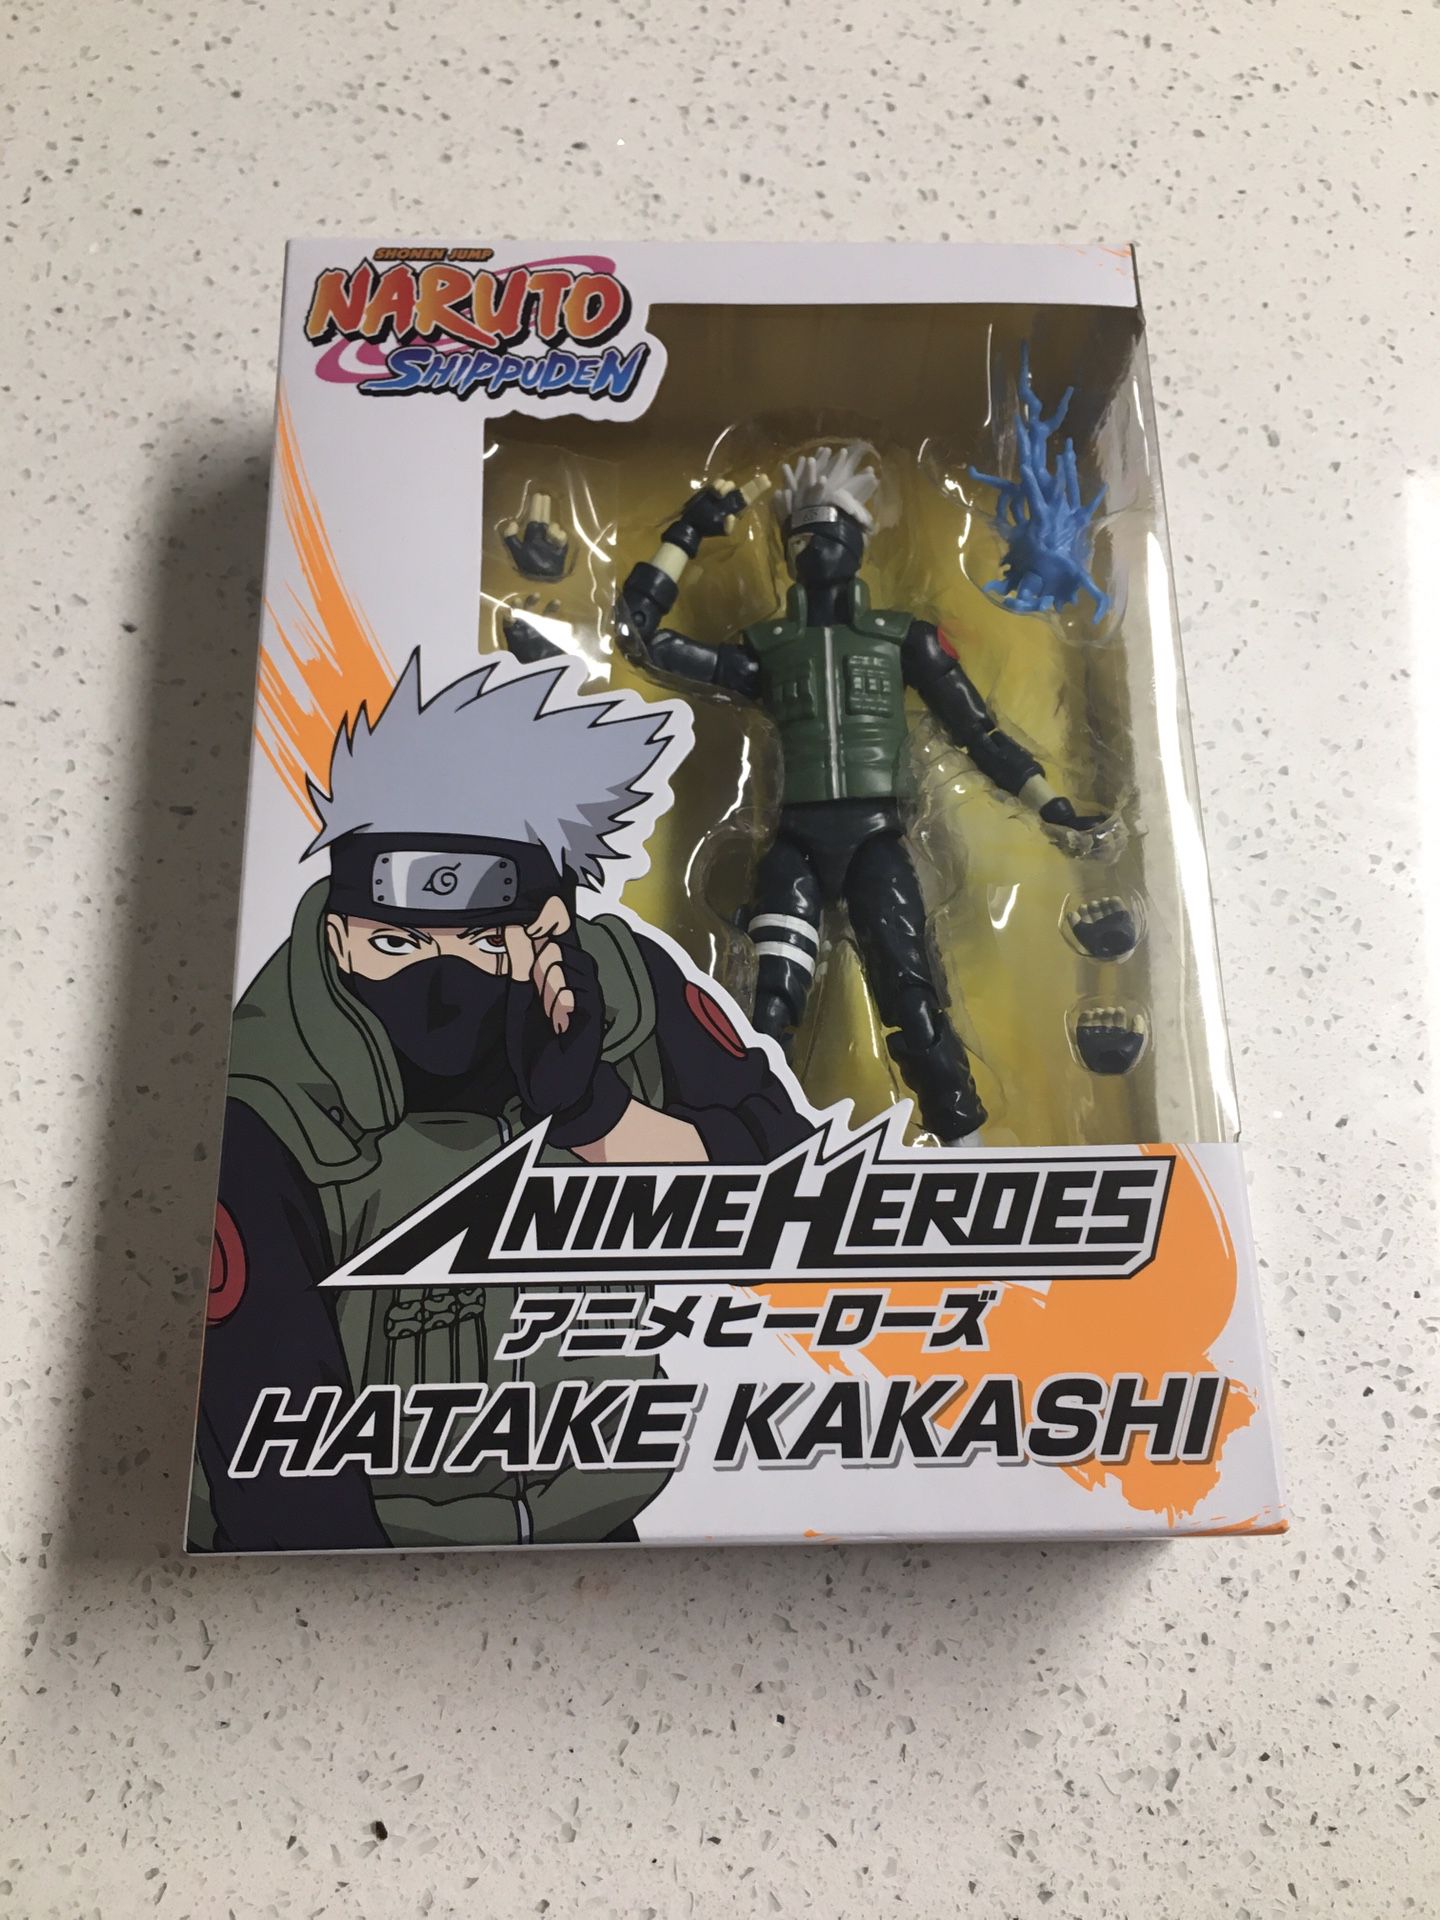 Bandai Anime Heroes Shonen Jump Naruto Shippuden Hatake Kakashi Action Figure